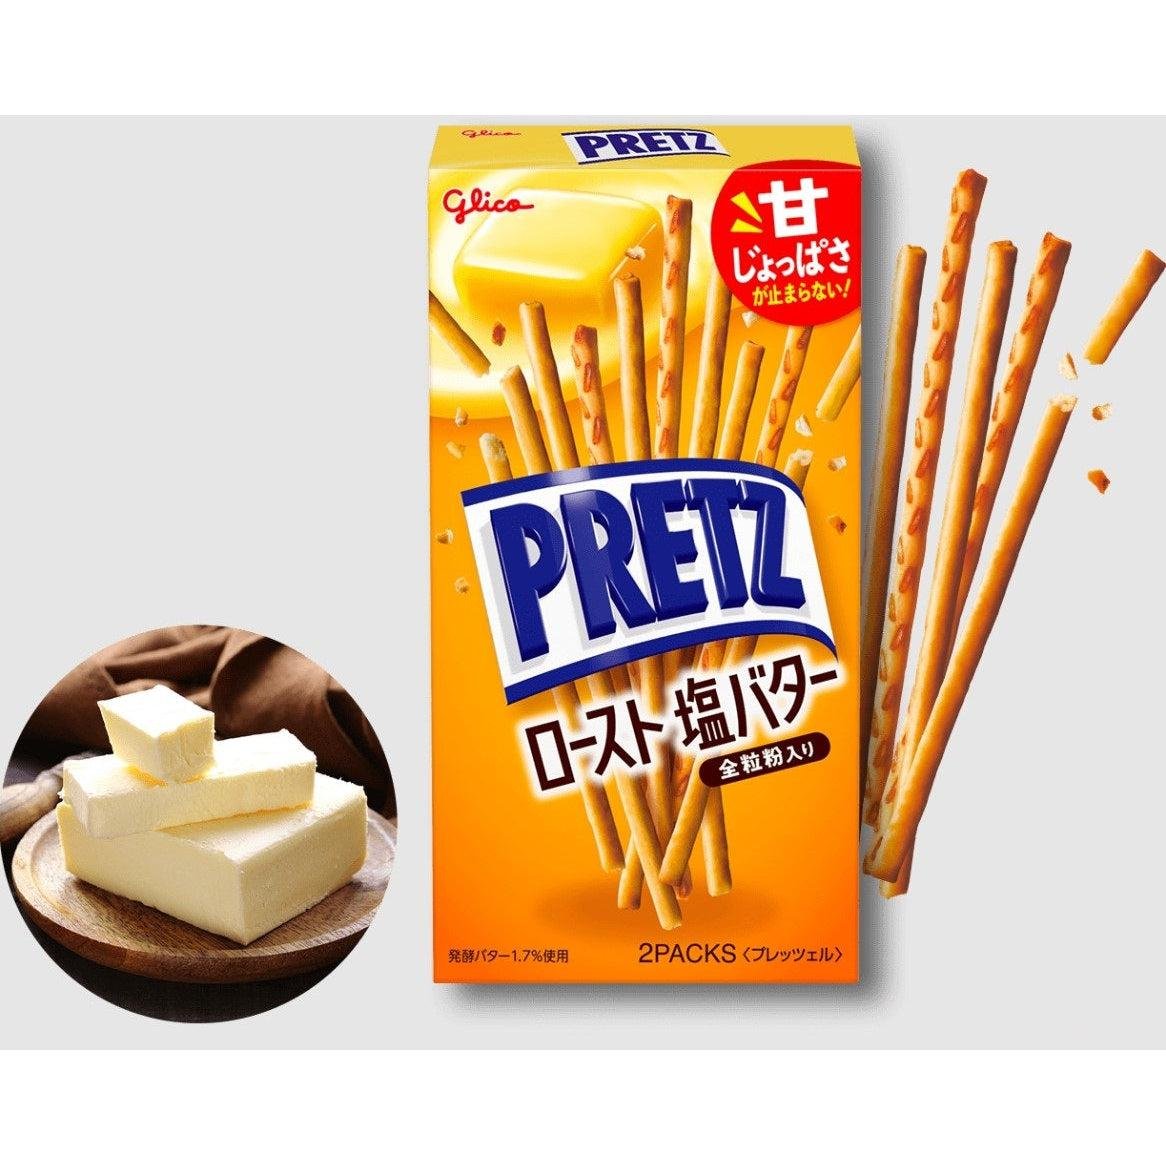 Glico Pretz Hokkaido Cultured Butter Biscuit Sticks 57g